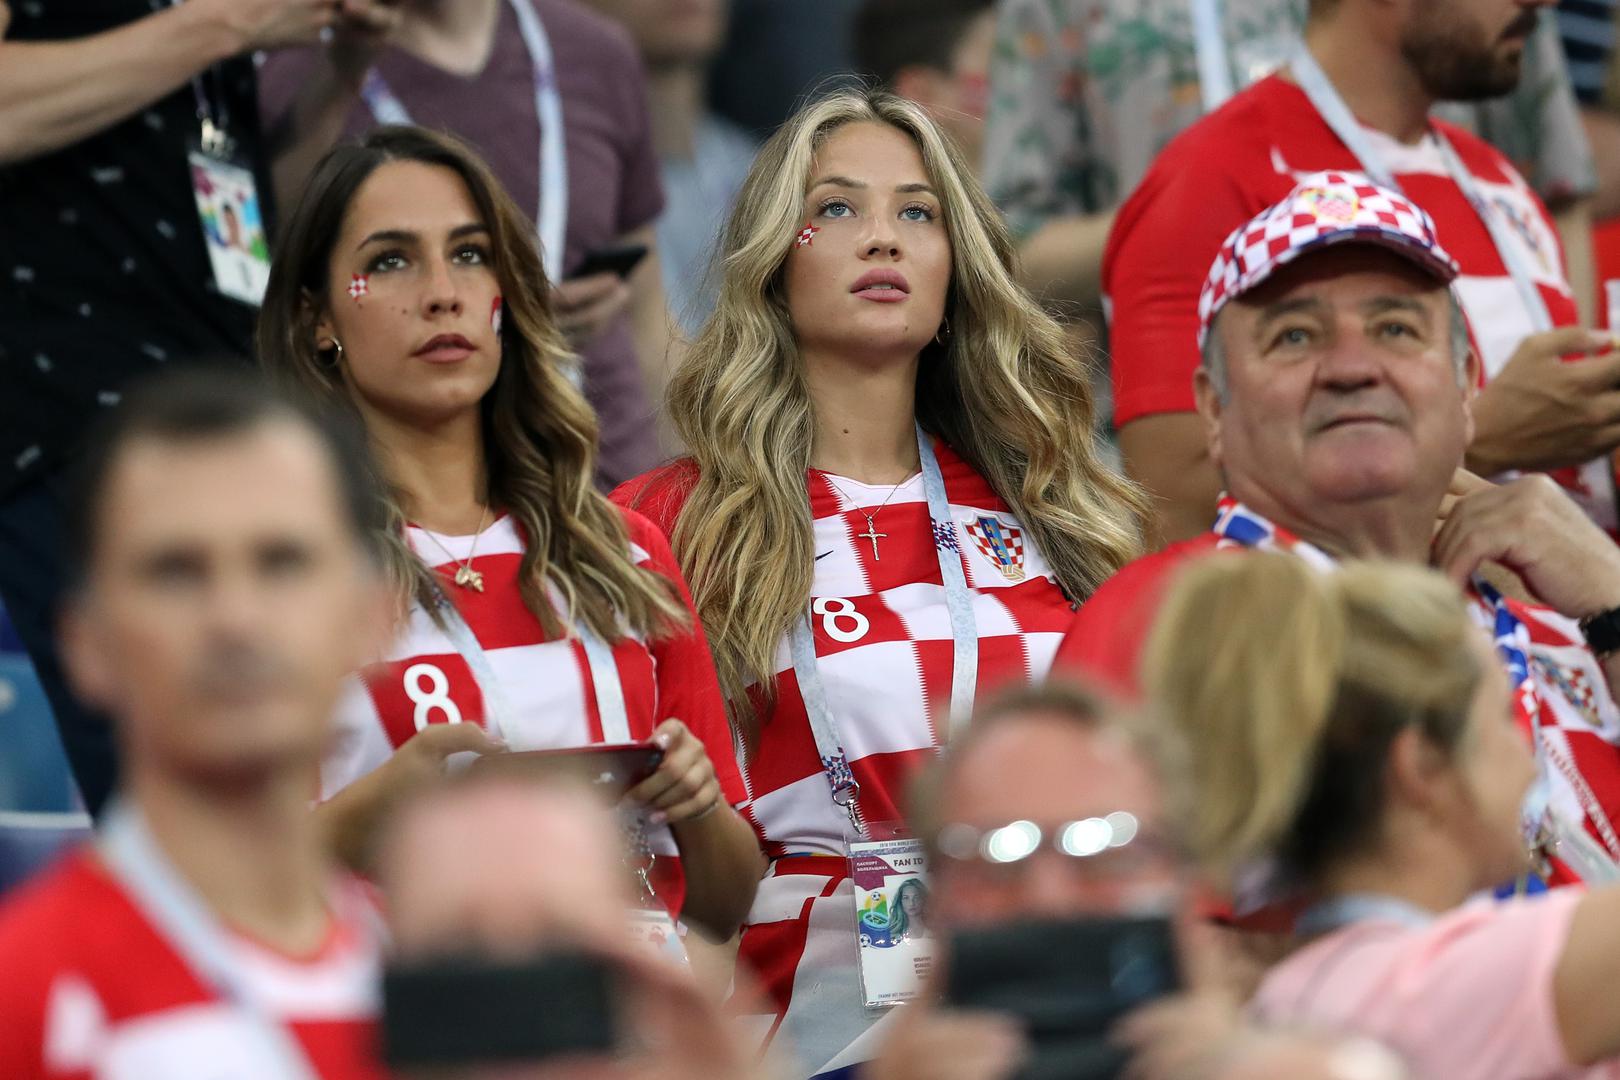 Utakmicu Hrvatske i Danske u Nižnji Novgorodu pratile su i bolje polovice naših reprezentativaca.

